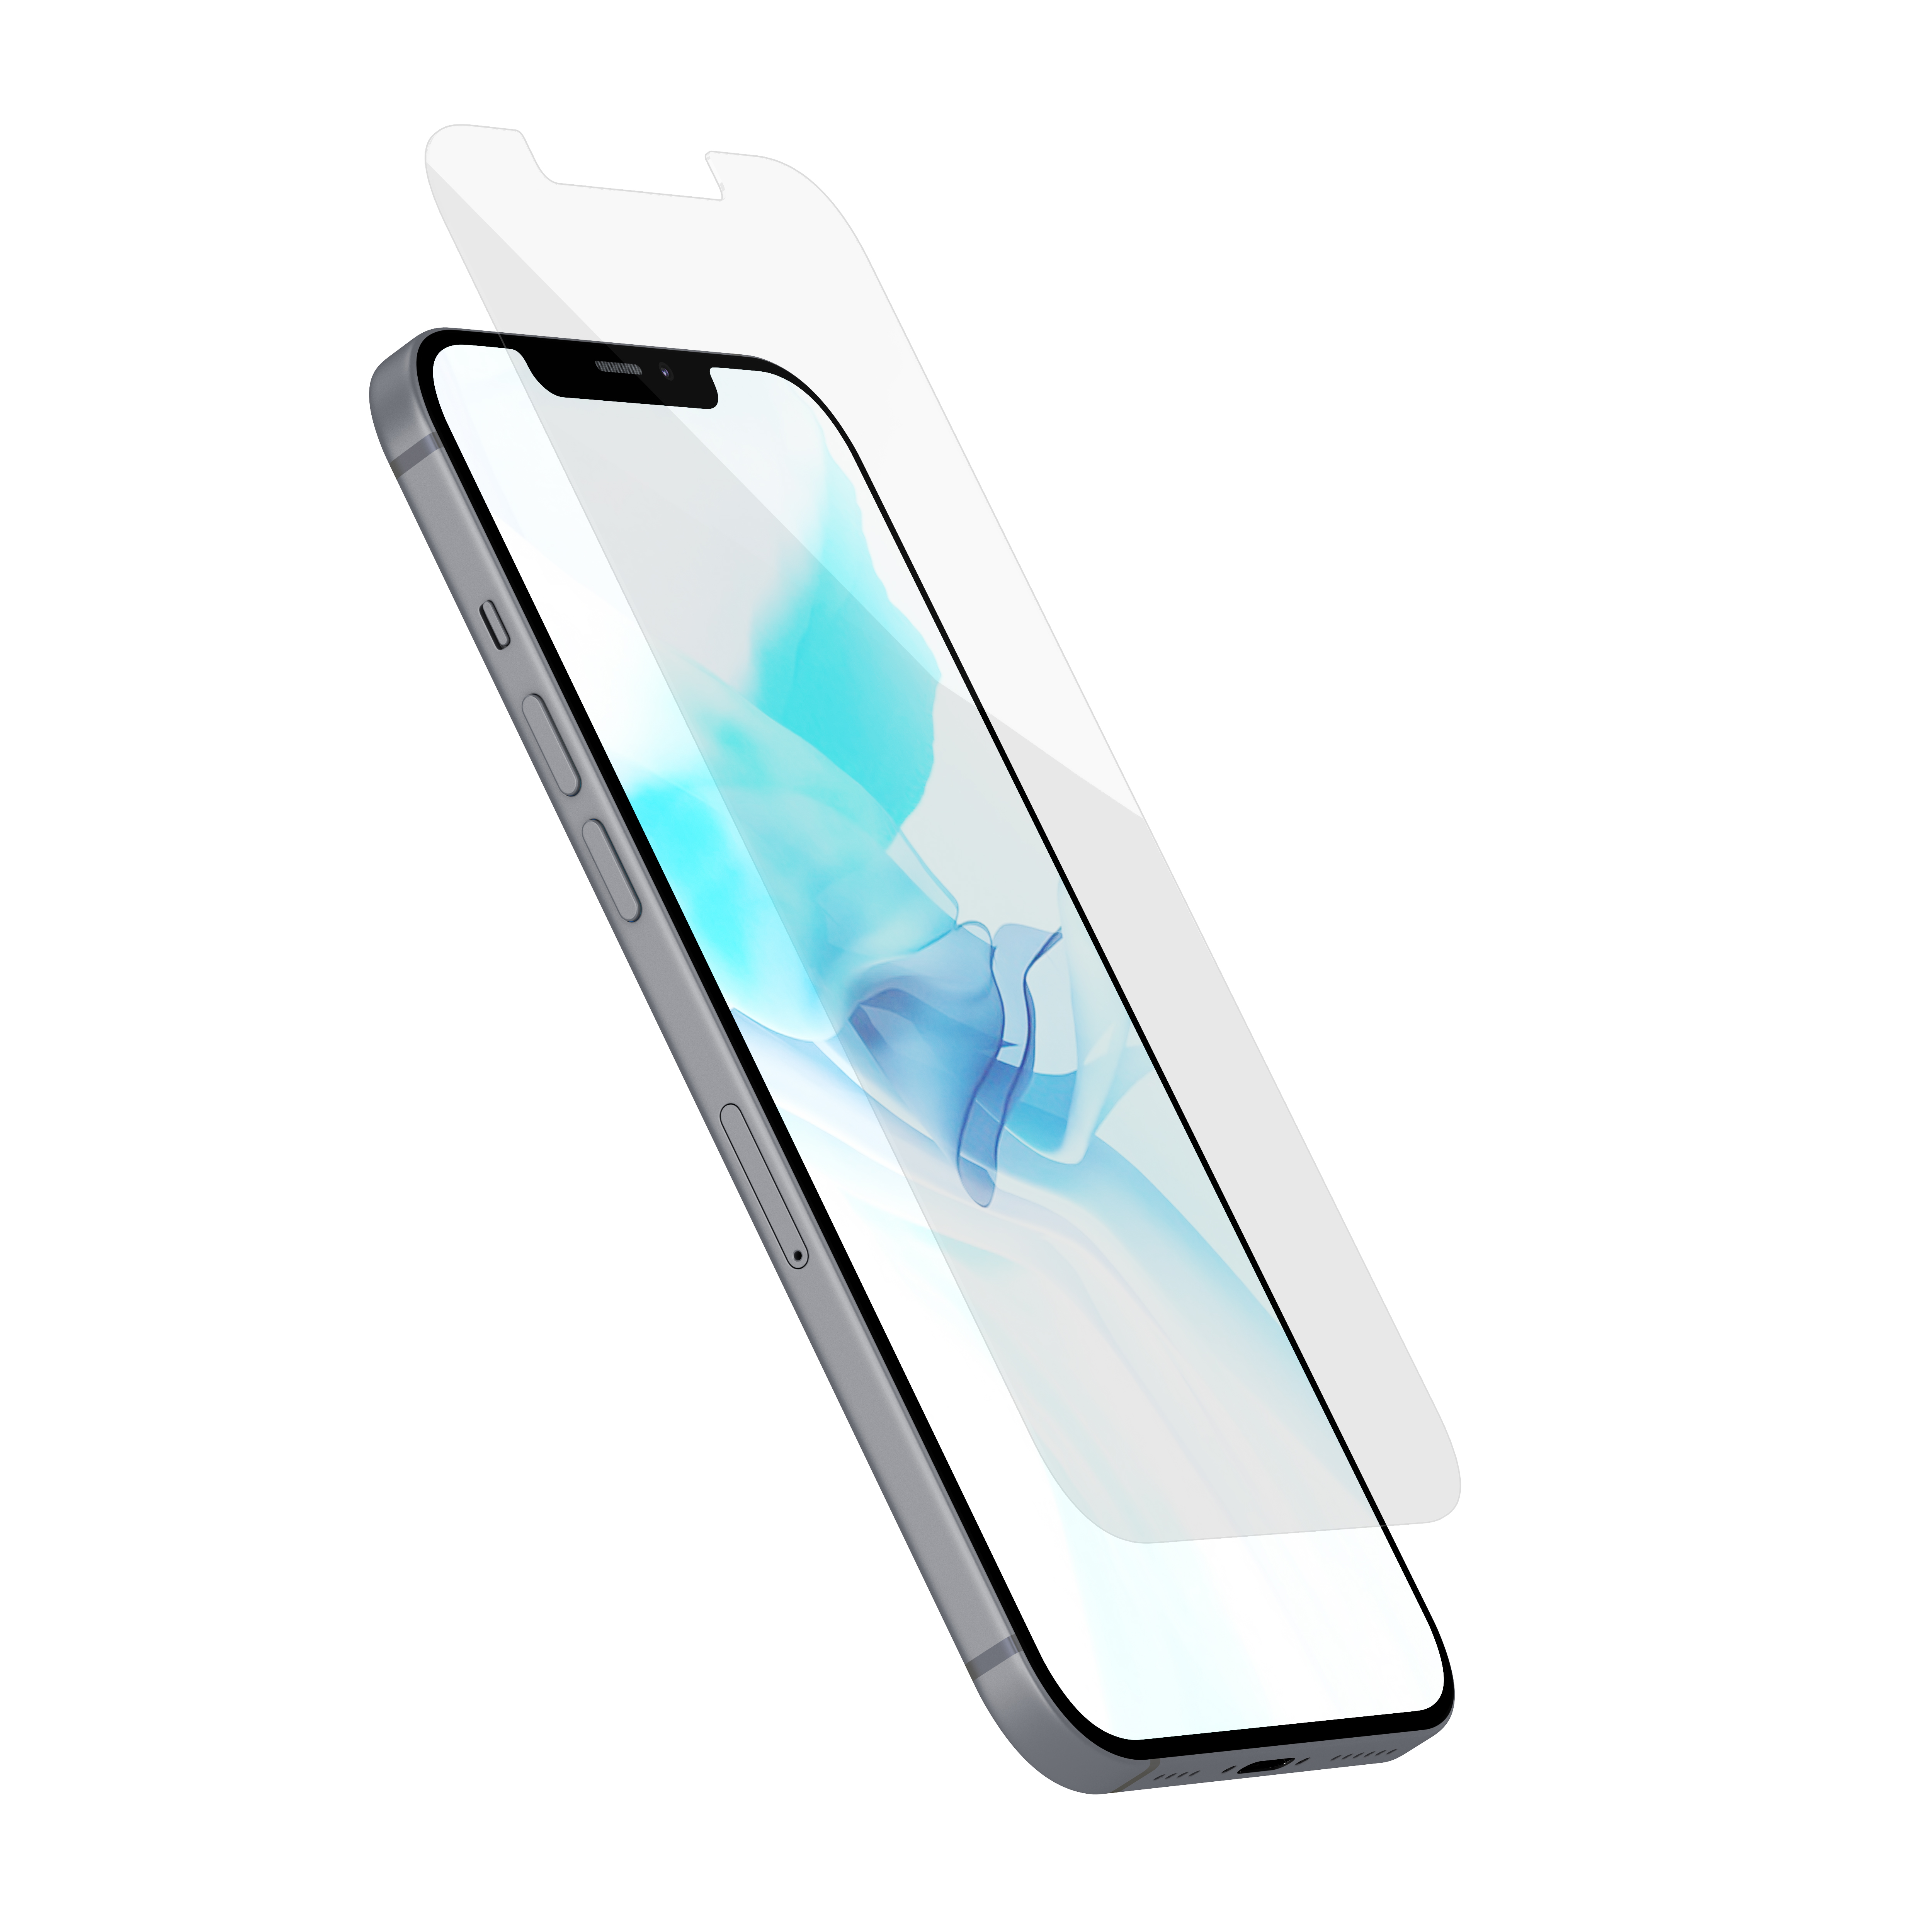 Защитное стекло uBear для iPhone 12 Mini, 0,3mm, алюмосиликатное